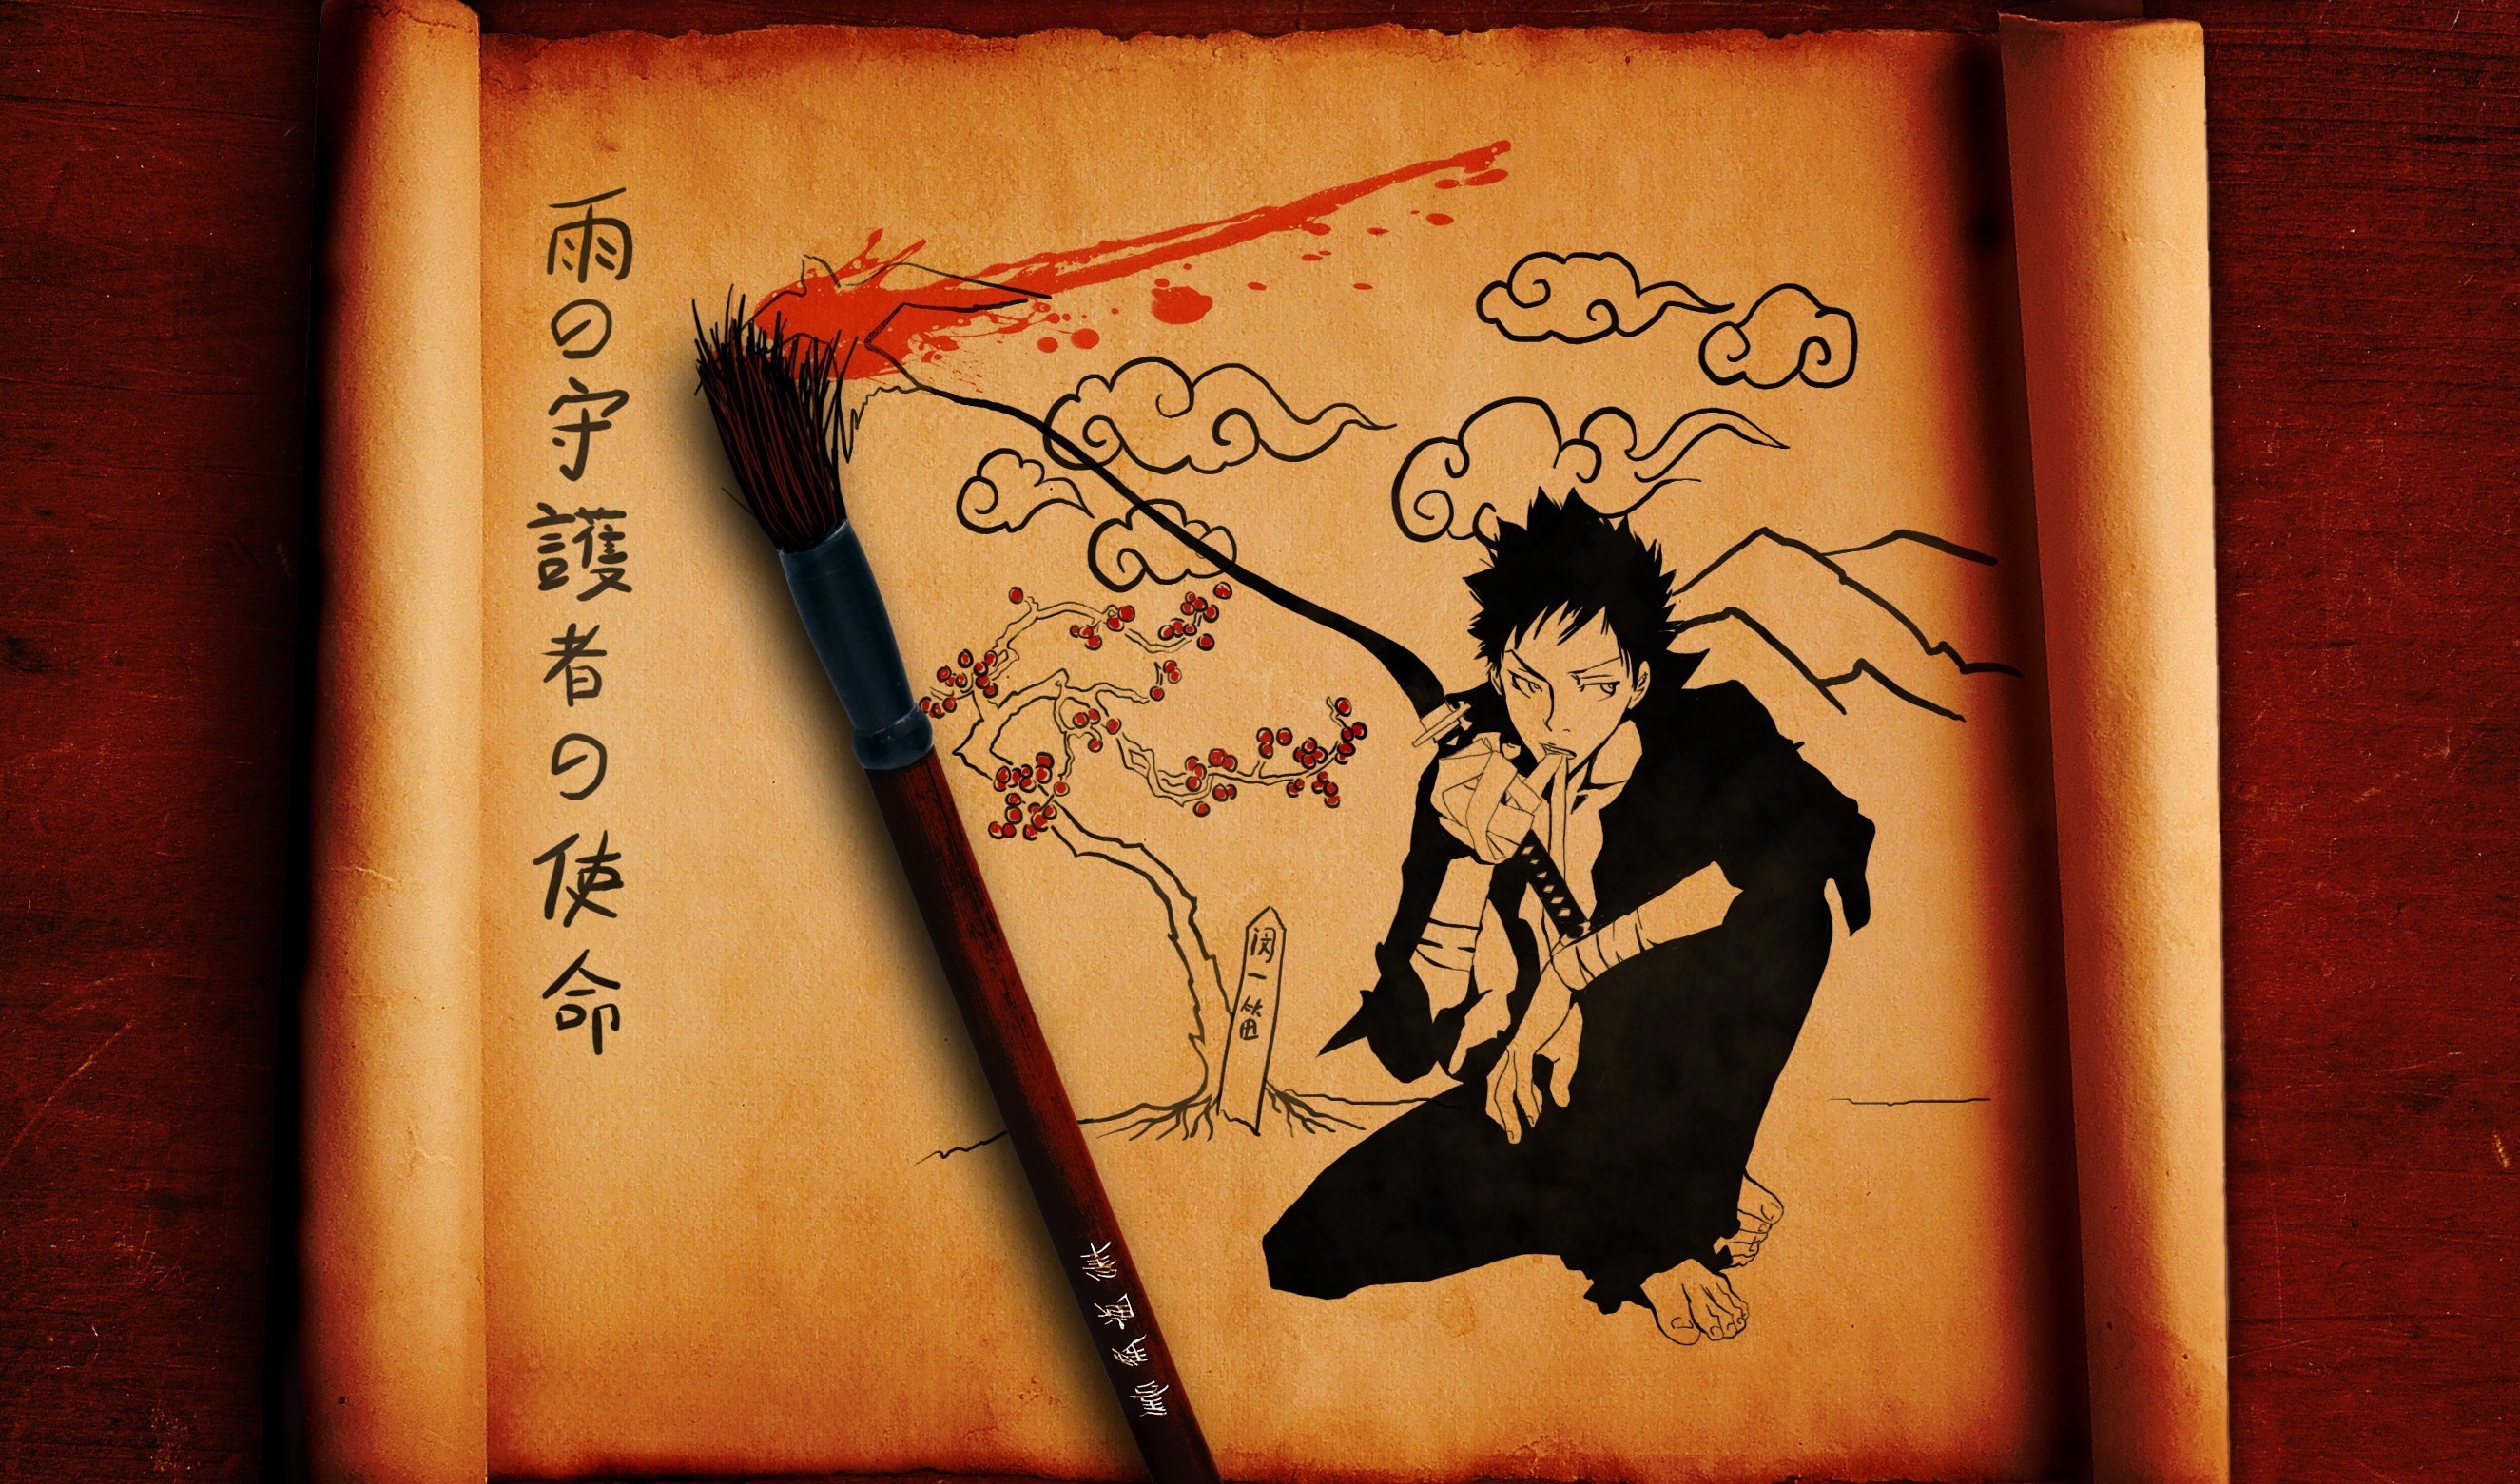 Download mobile wallpaper Anime, Katekyō Hitman Reborn! for free.